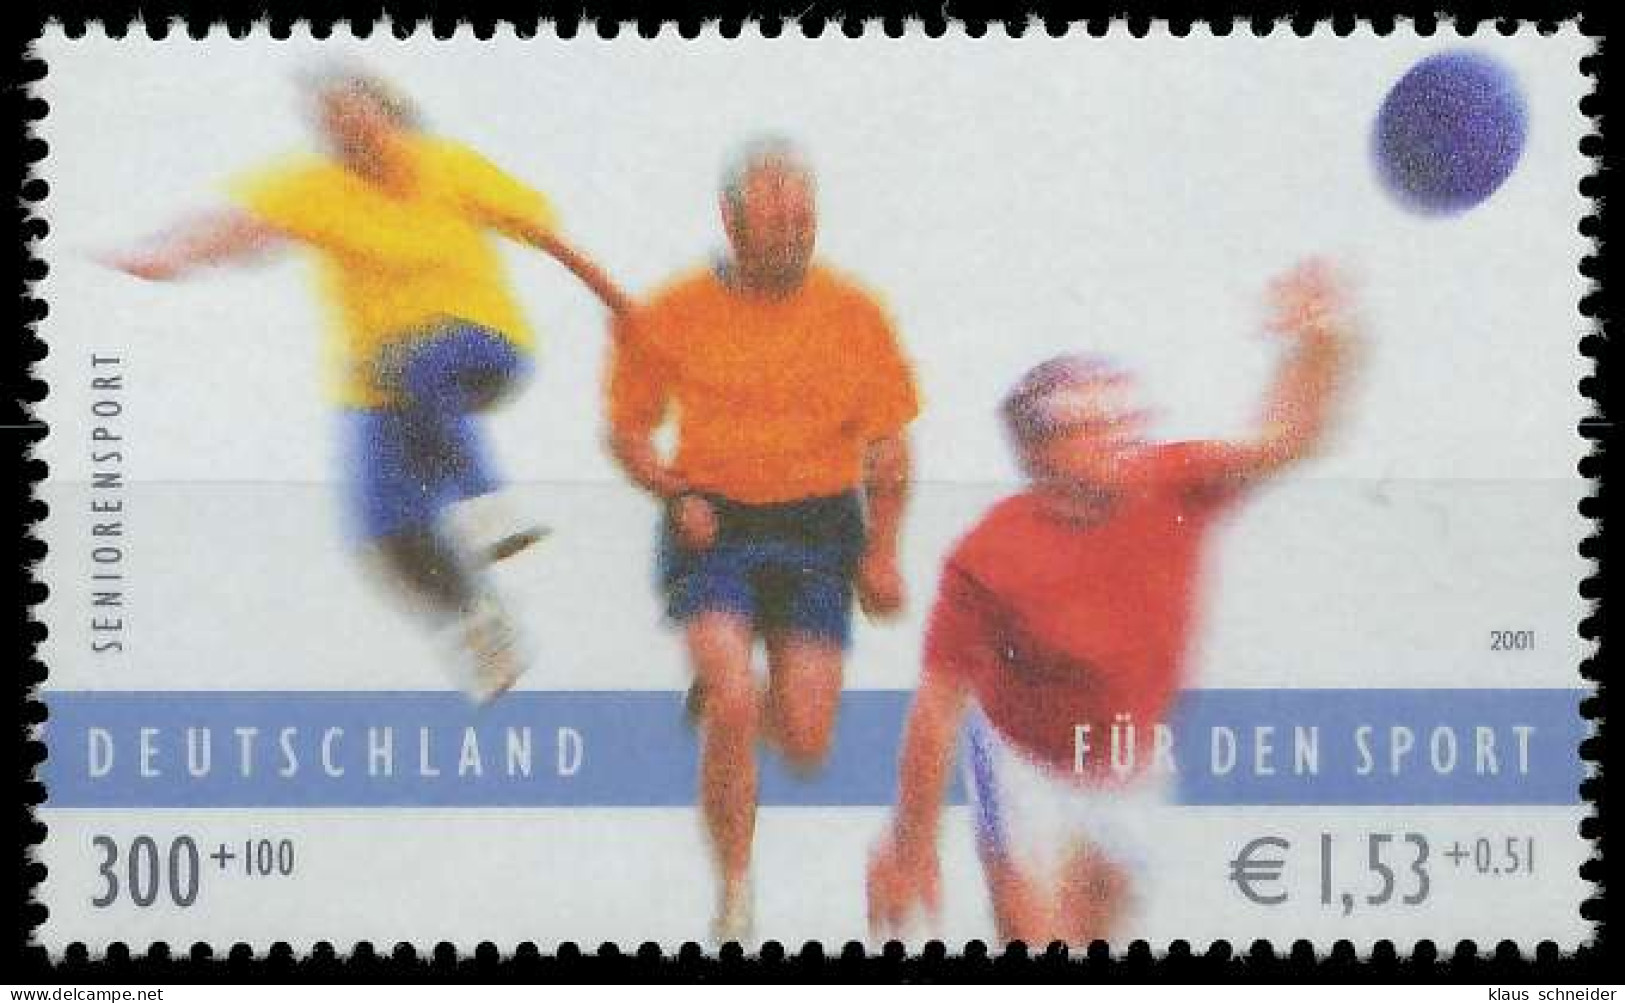 BRD BUND 2001 Nr 2168 Postfrisch SE194D2 - Unused Stamps